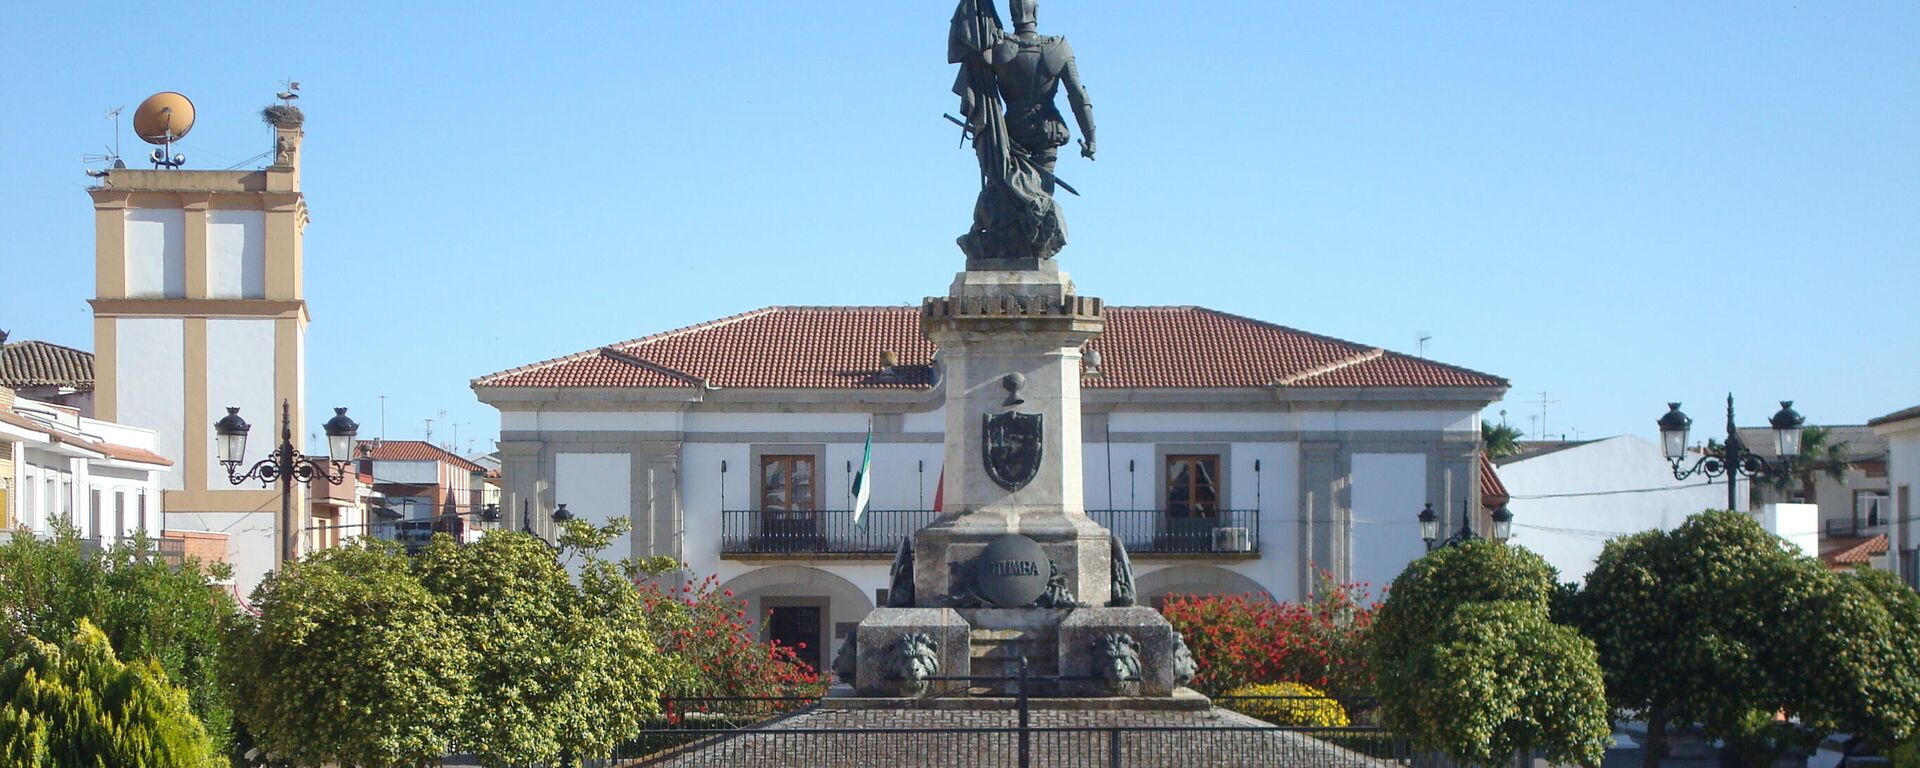 Monumento a Hernán Cortés en Medellín (Badajoz) - Sputnik Mundo, 1920, 13.10.2021